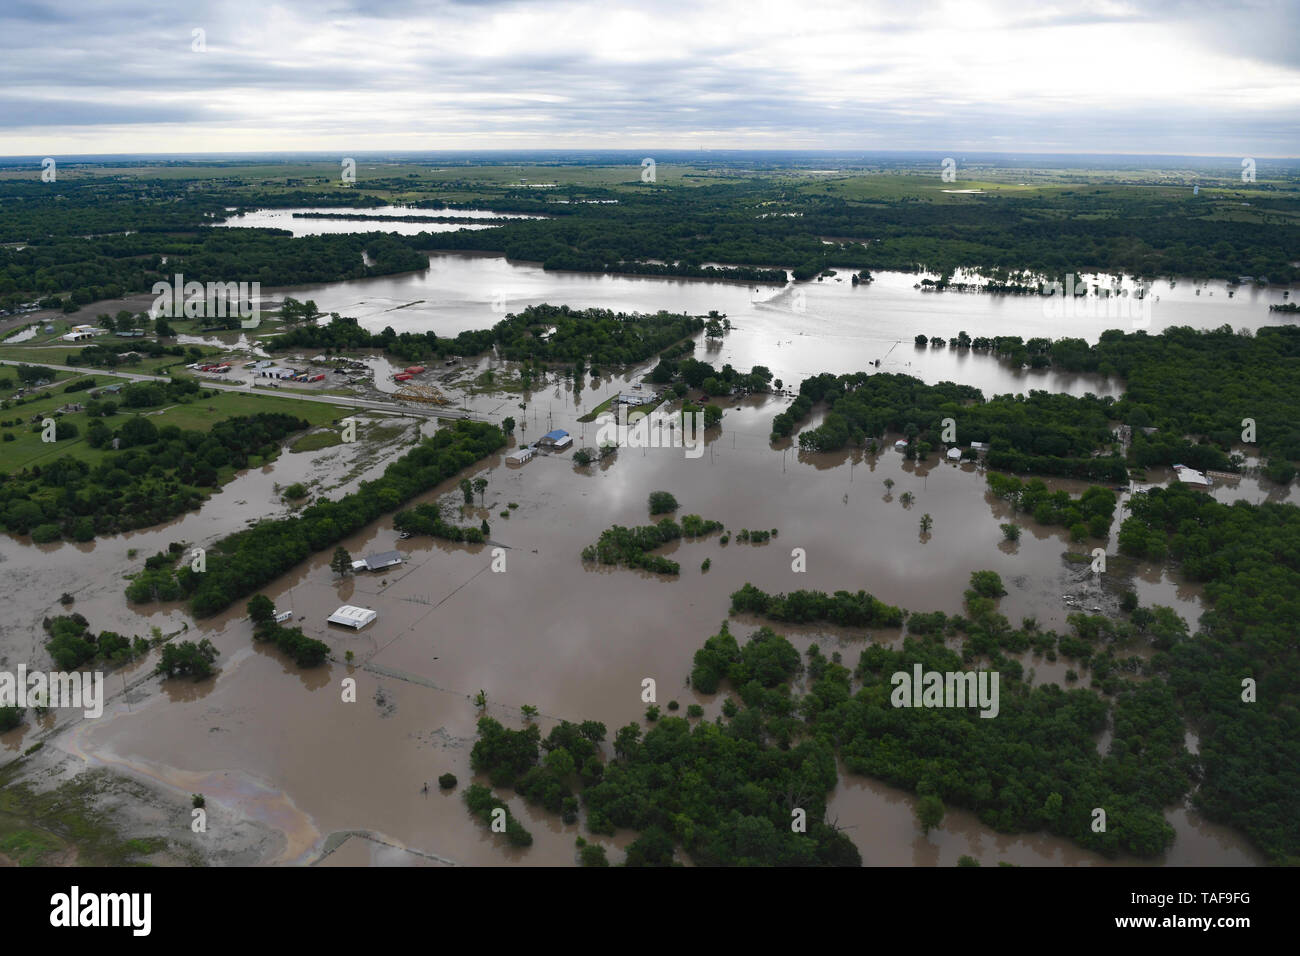 Vista aerea di inondazione oltre le rive del fiume Arkansas Maggio 22, 2019 in Tulsa, Oklahoma. Più di mille case sono state effettuate dalle inondazioni portato da una estrema pioggia accompagnato da tornados. Foto Stock